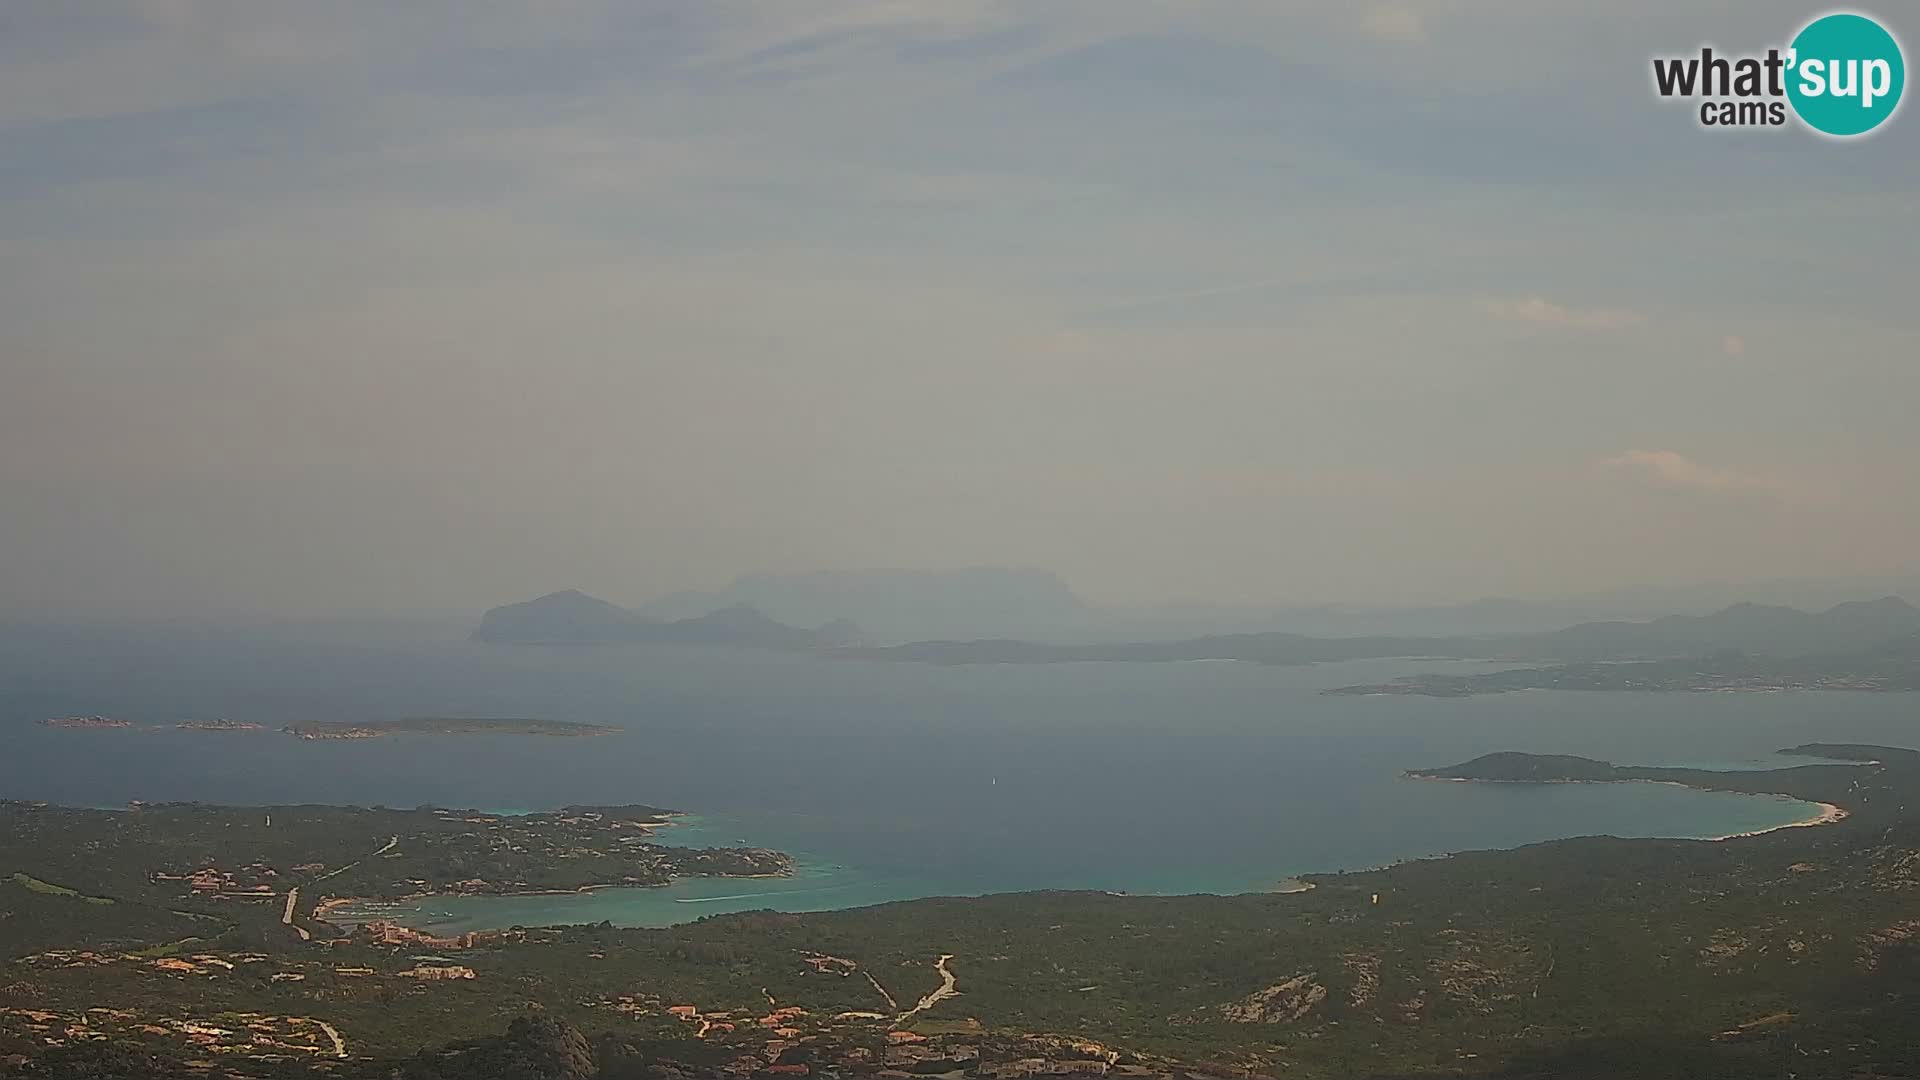 Monte Moro webcam Costa Smeralda panoramic view Sardinia